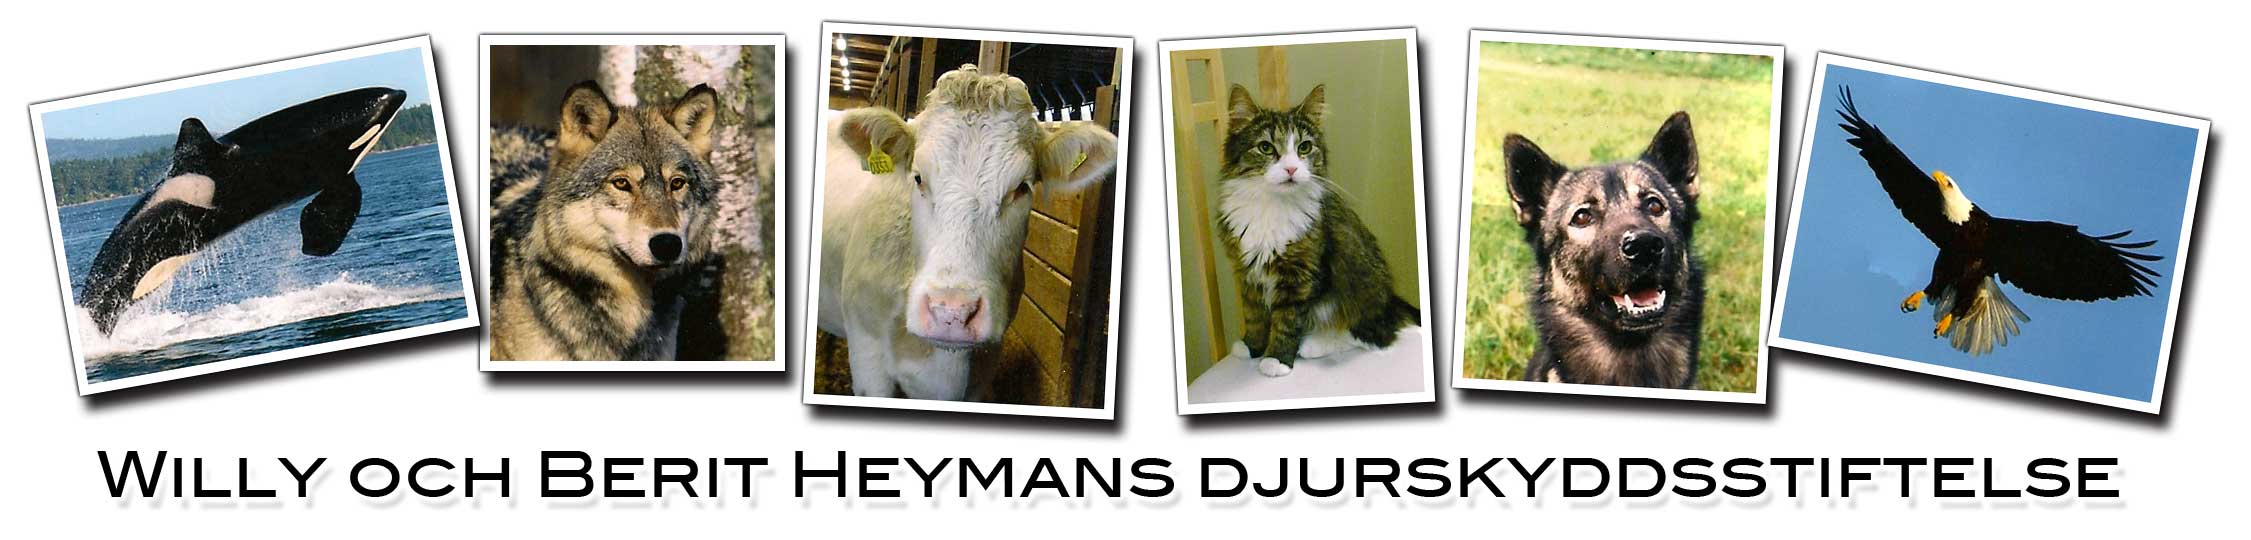 Bild på logga för Heymans djurskyddsstiftlese och länk till deras hemsida